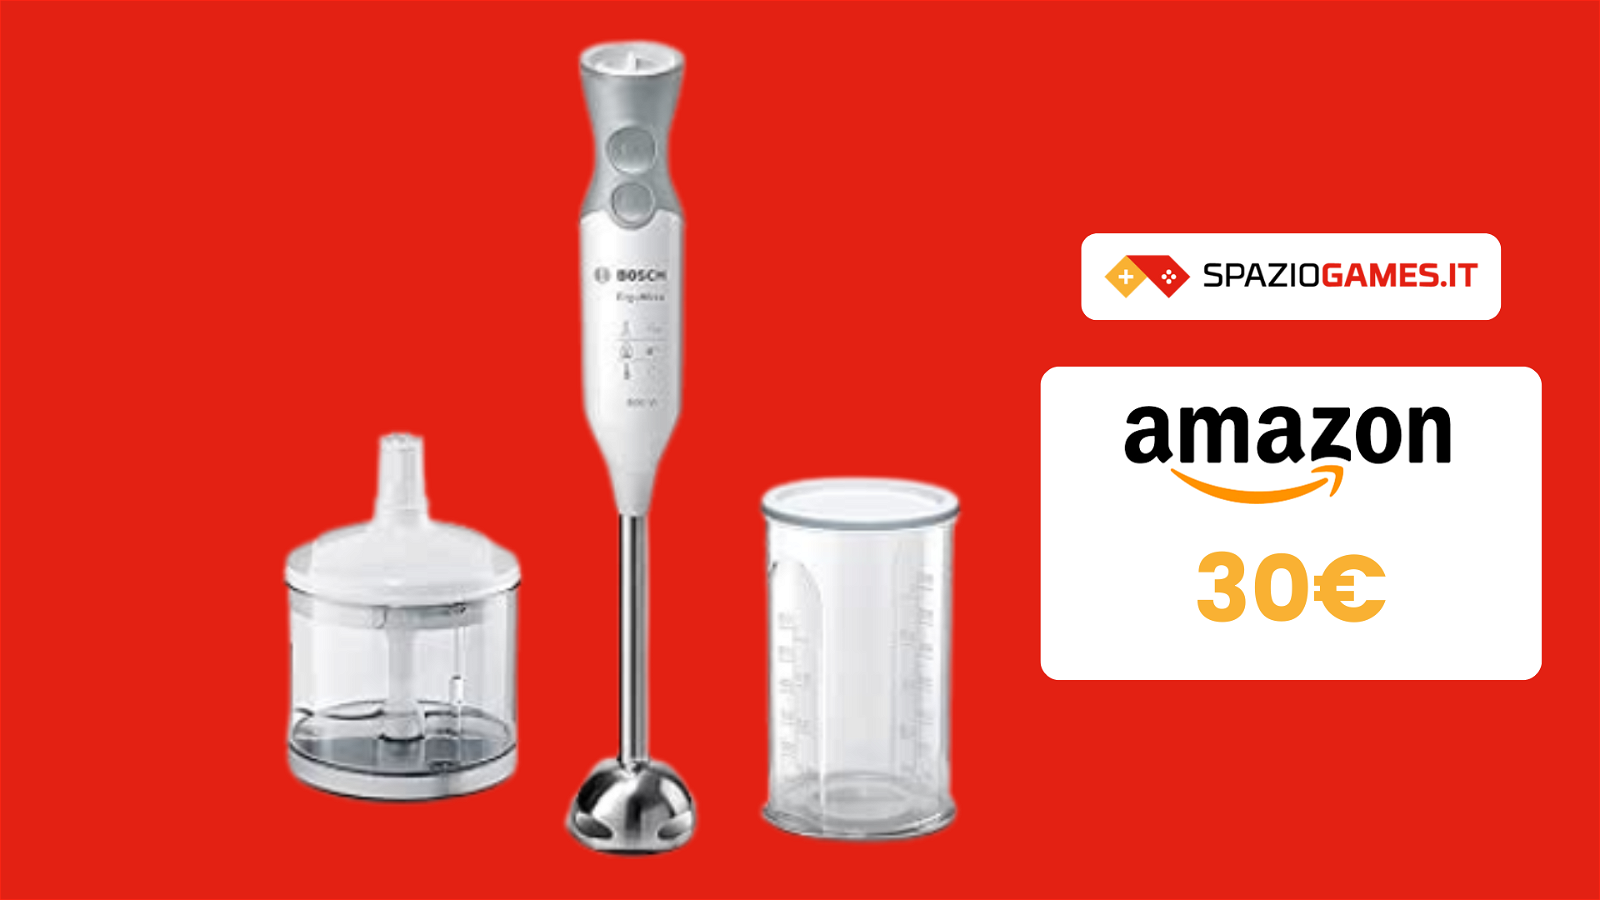 VENDUTISSIMO su Amazon: frullatore a immersione Bosch a 30€!